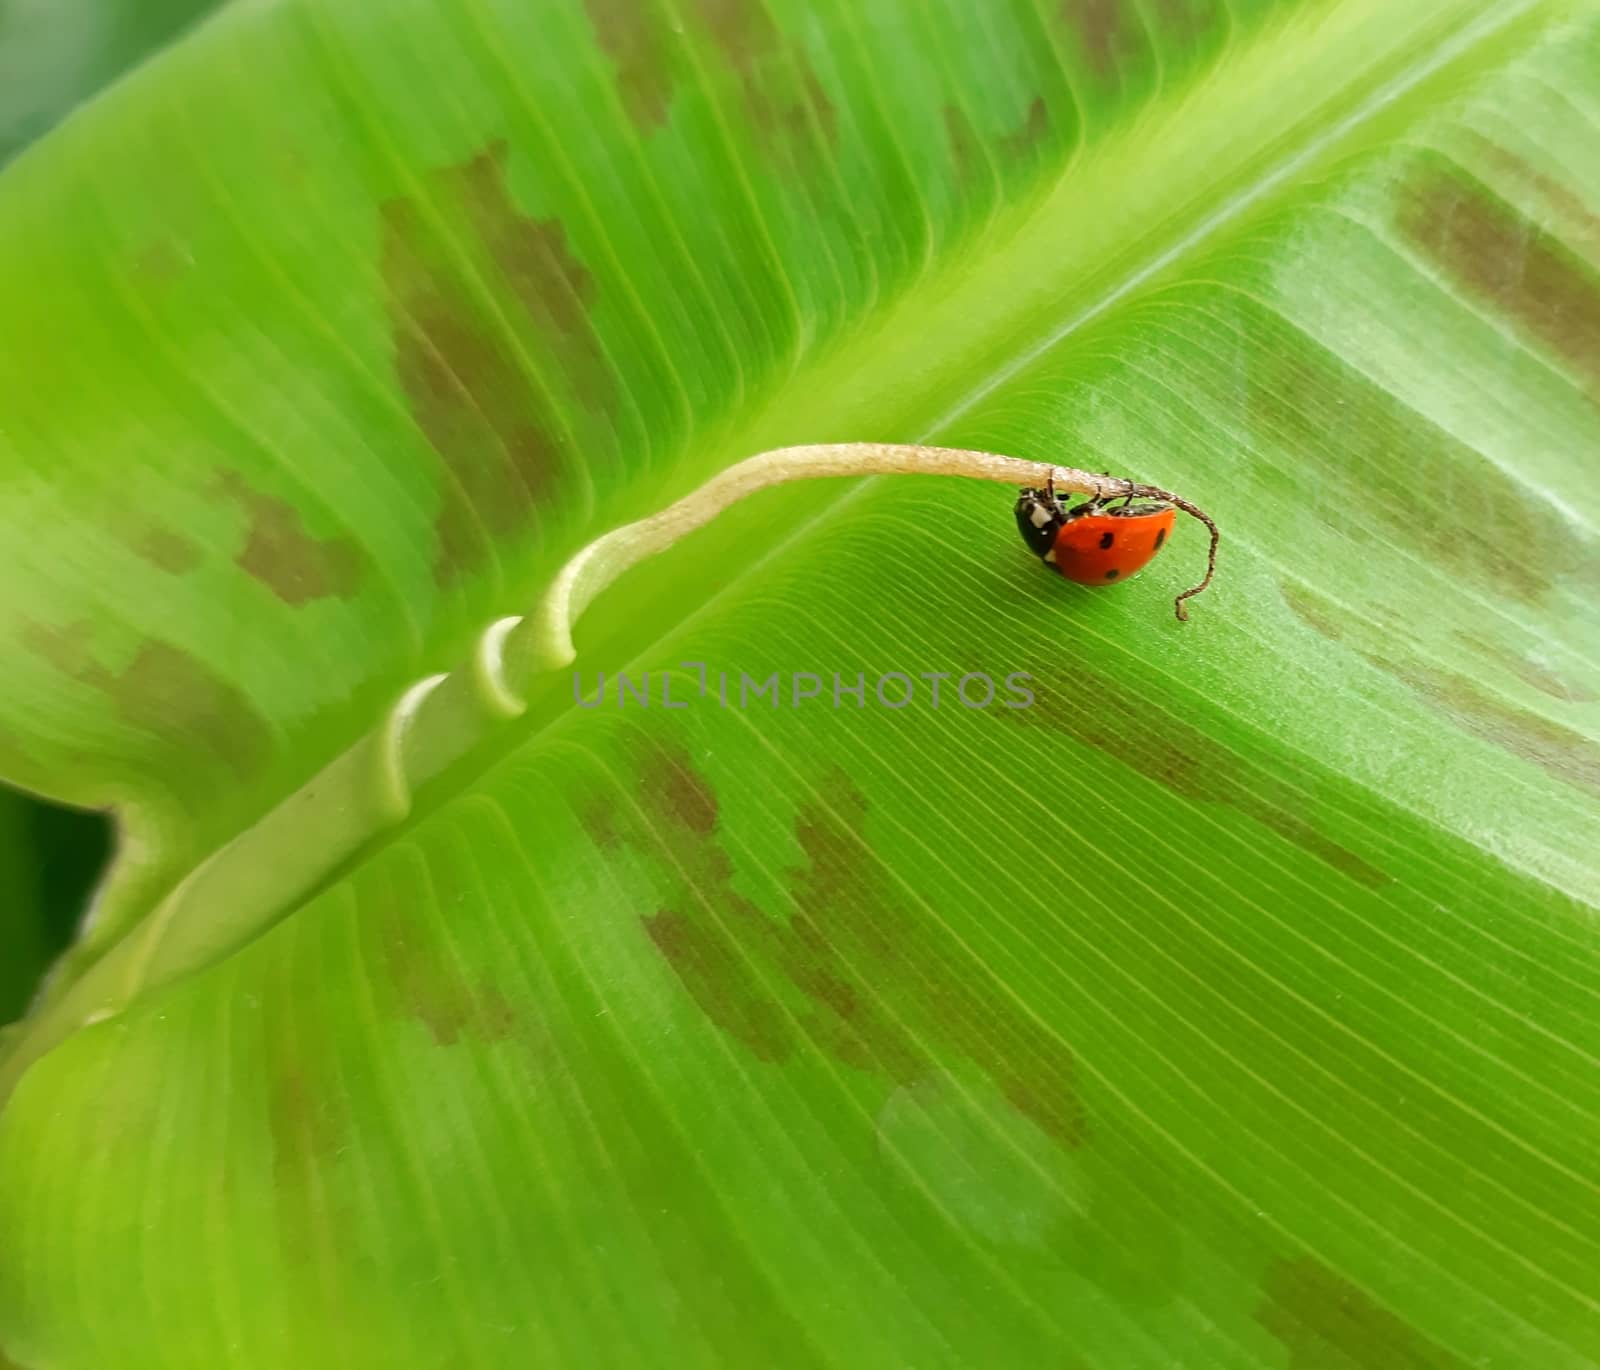 A ladybug on top of a banana leaf by Mindru